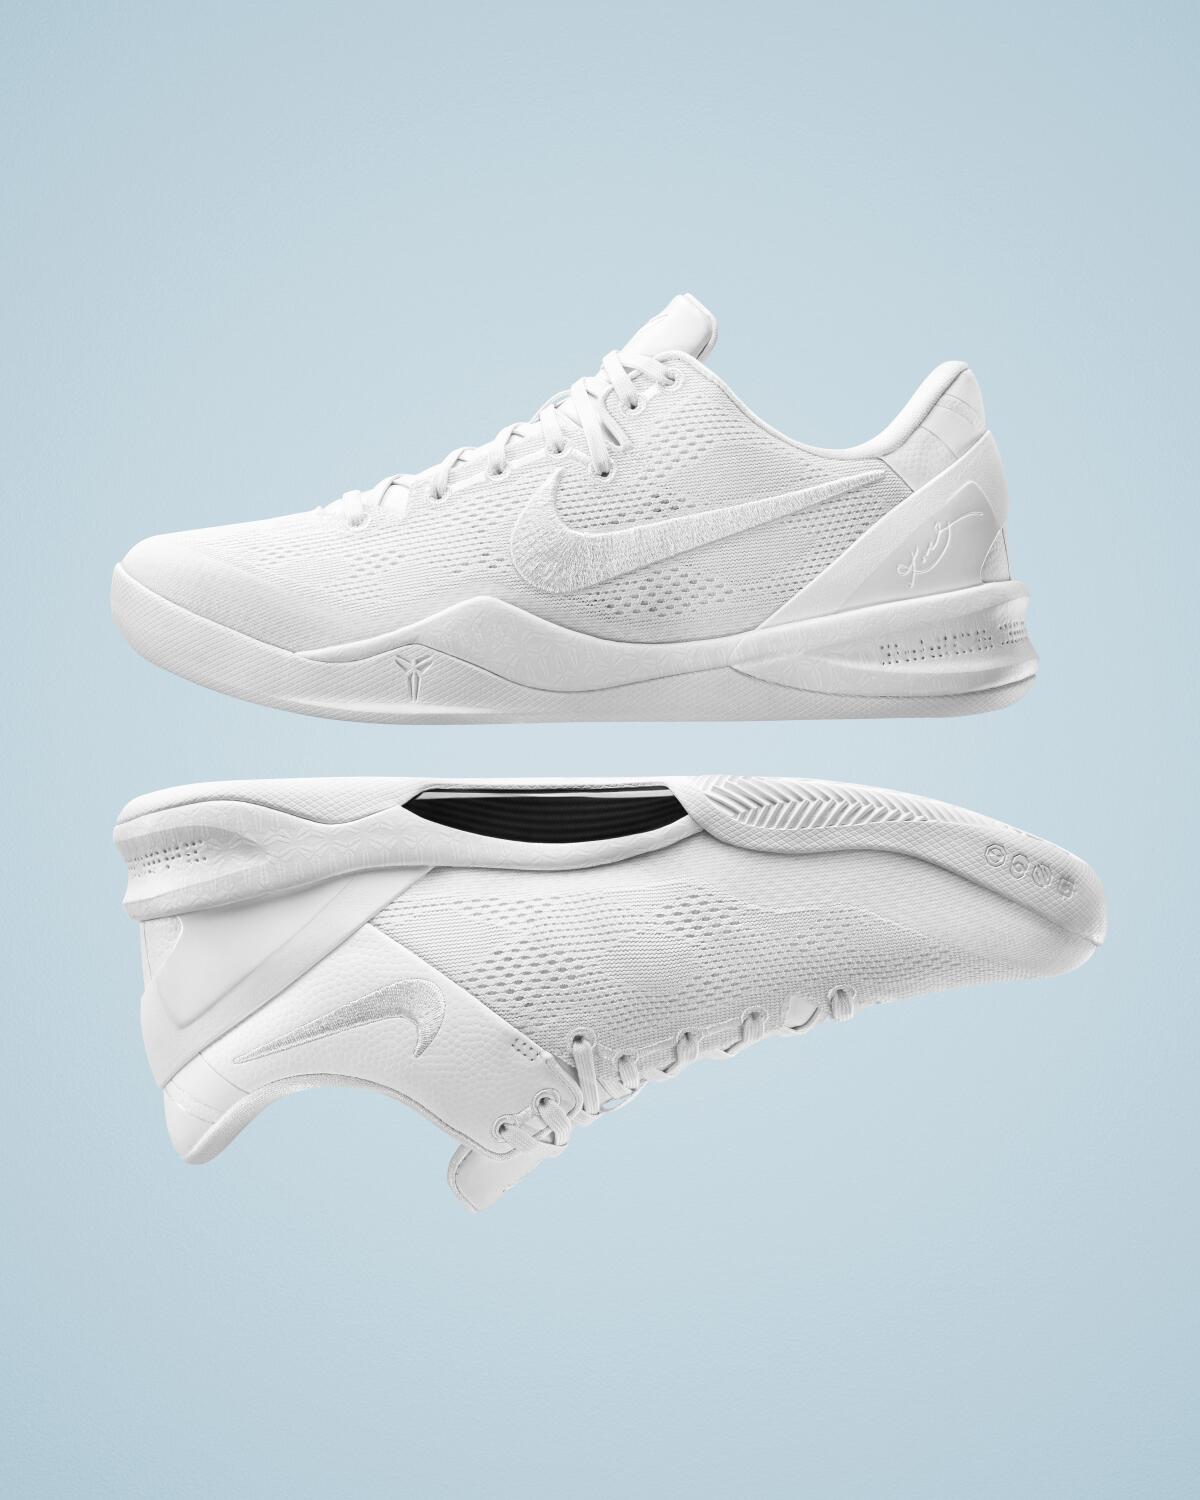 A pair of white Nike Kobe 8 Protro Halo shoes.